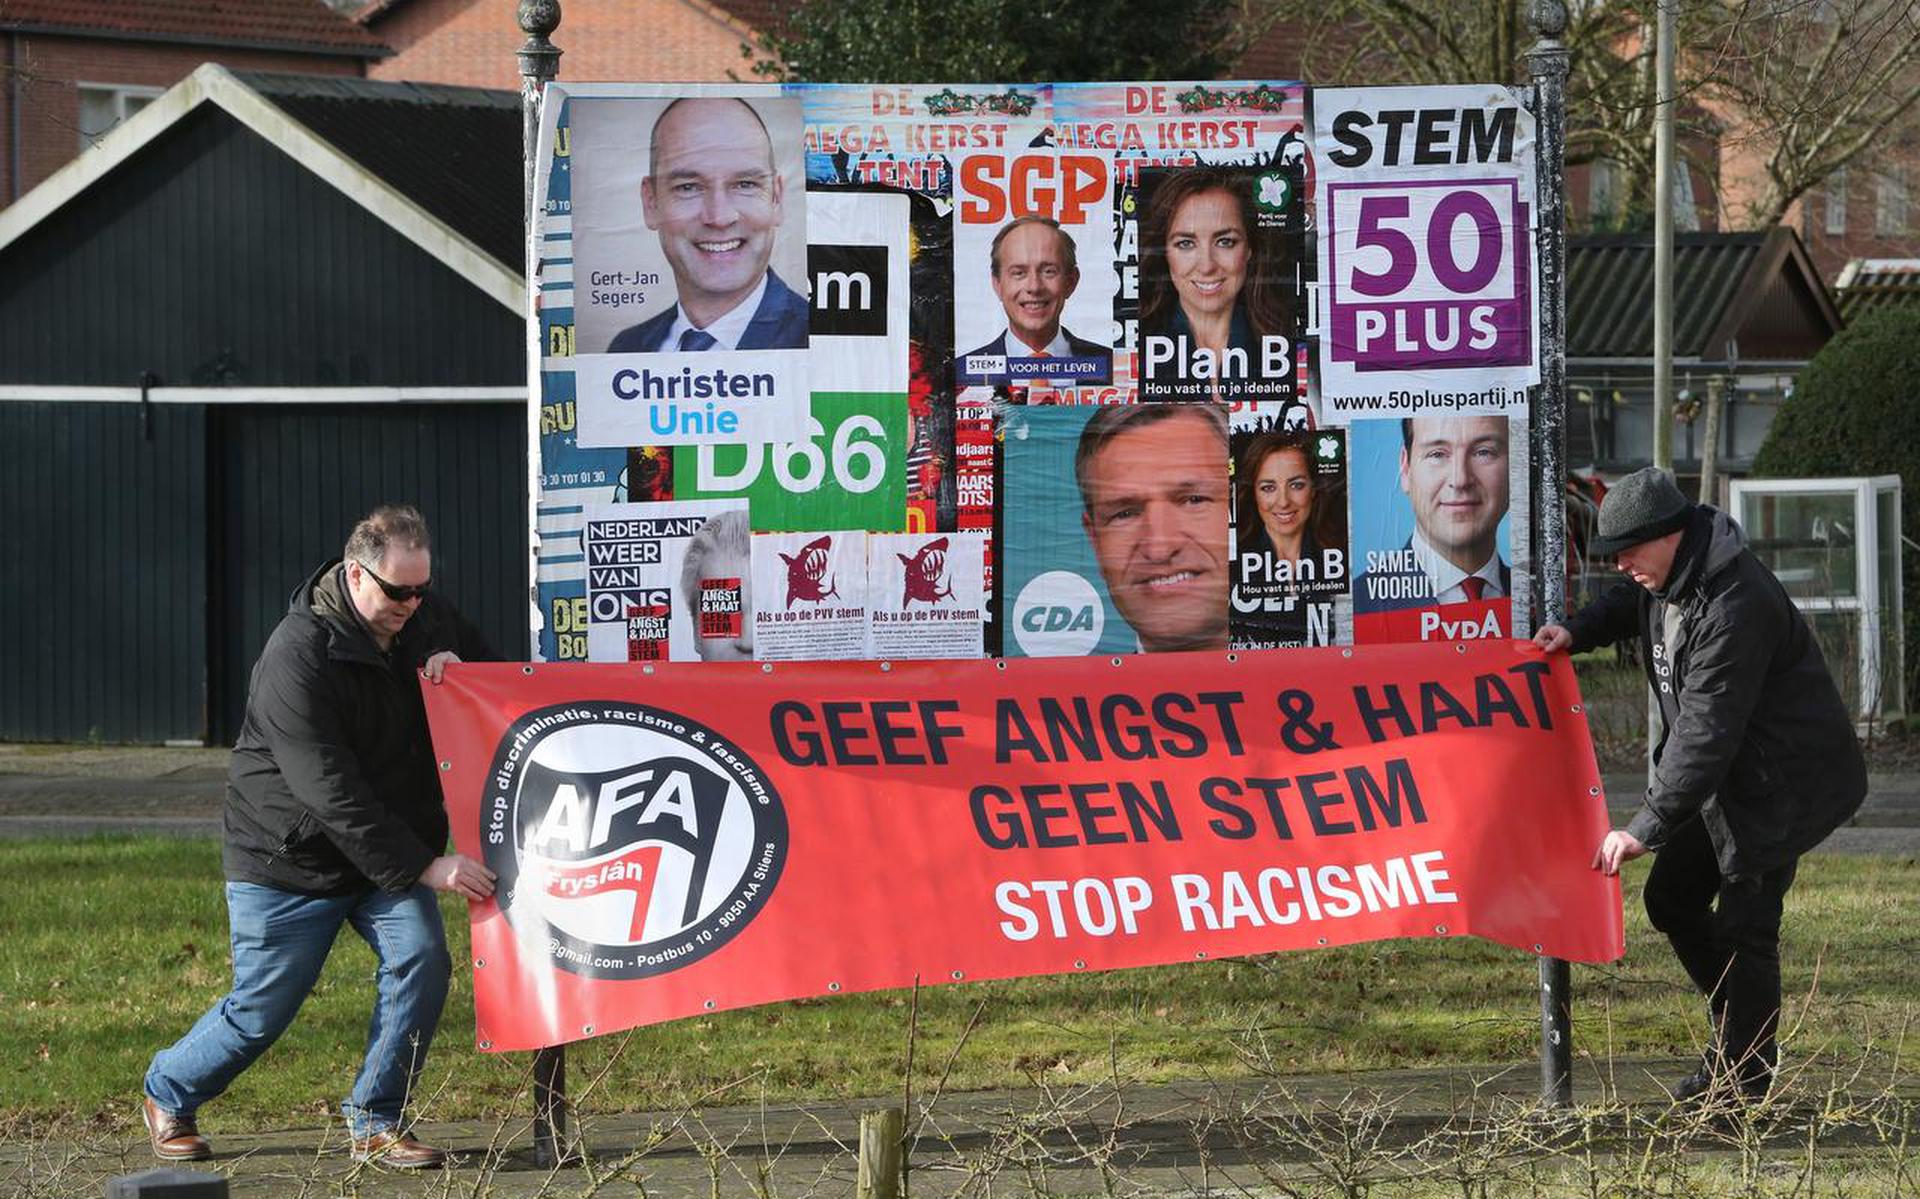 Een spanddoek van AFAF bij Gytsjerk in aanloop naar de Tweede Kamerverkiezingen van maart 2017. ARCHIEFFOTO NIELS WESTRA

